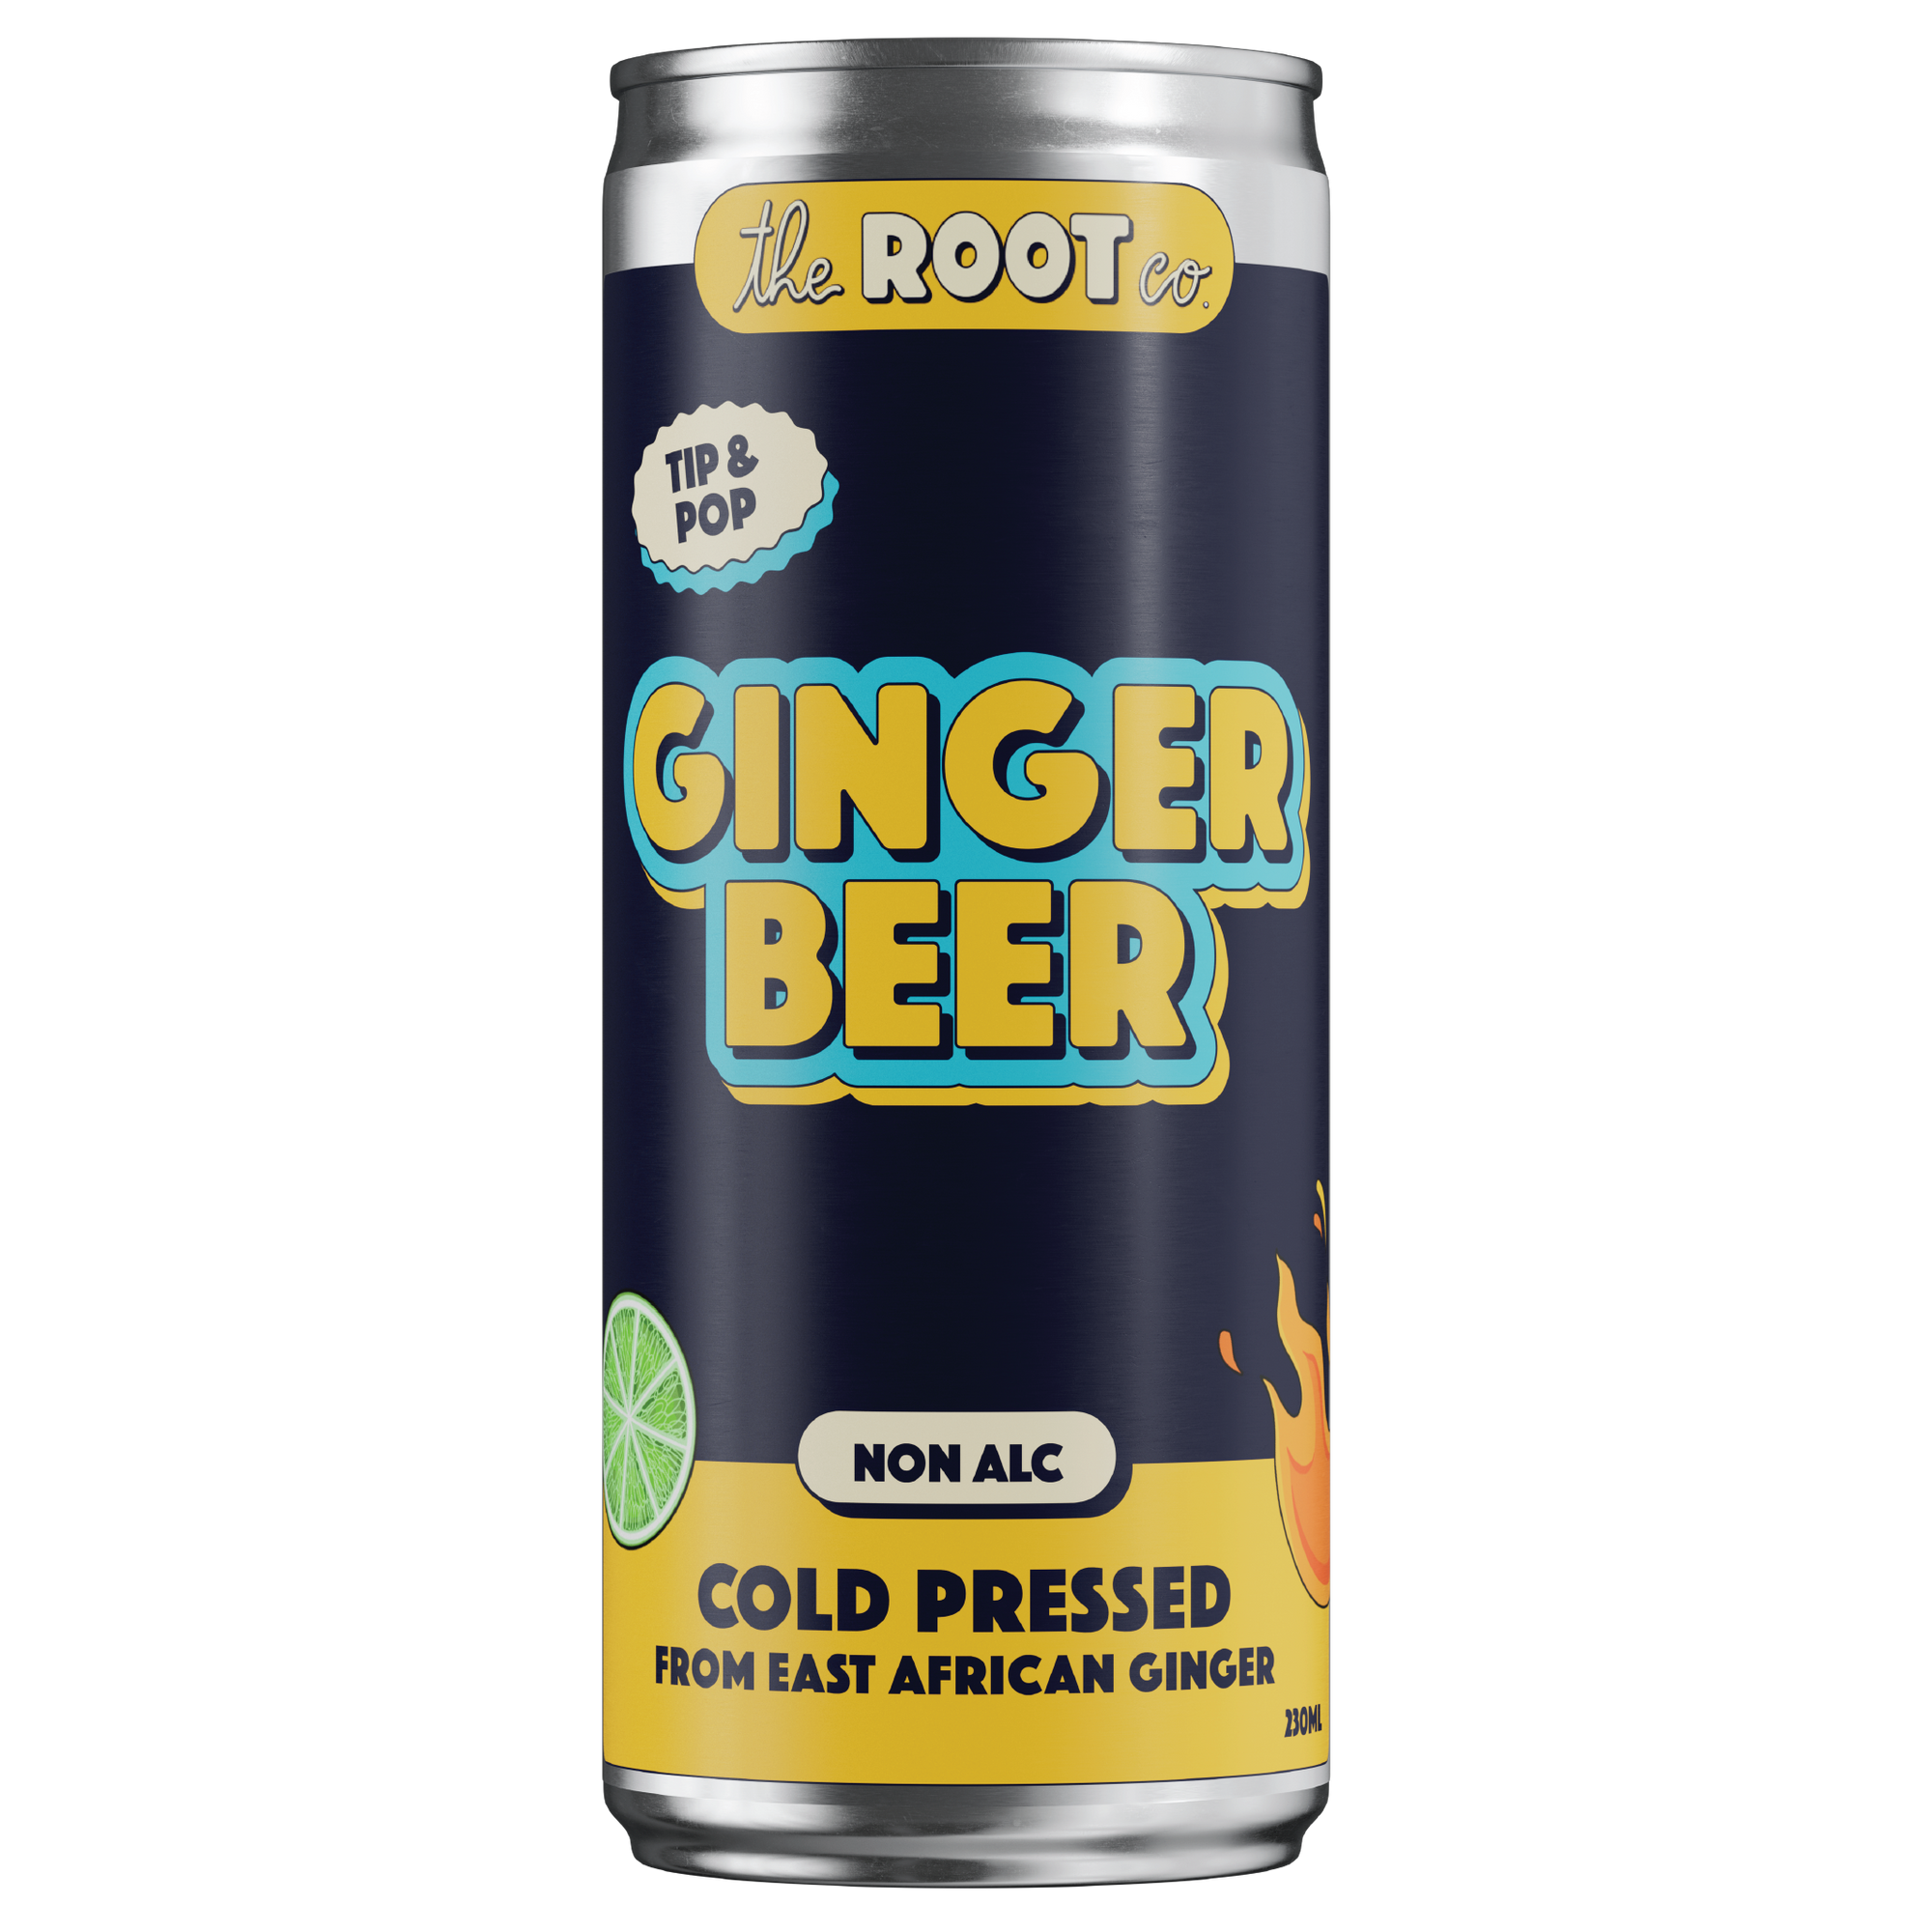 Original Ginger Beer